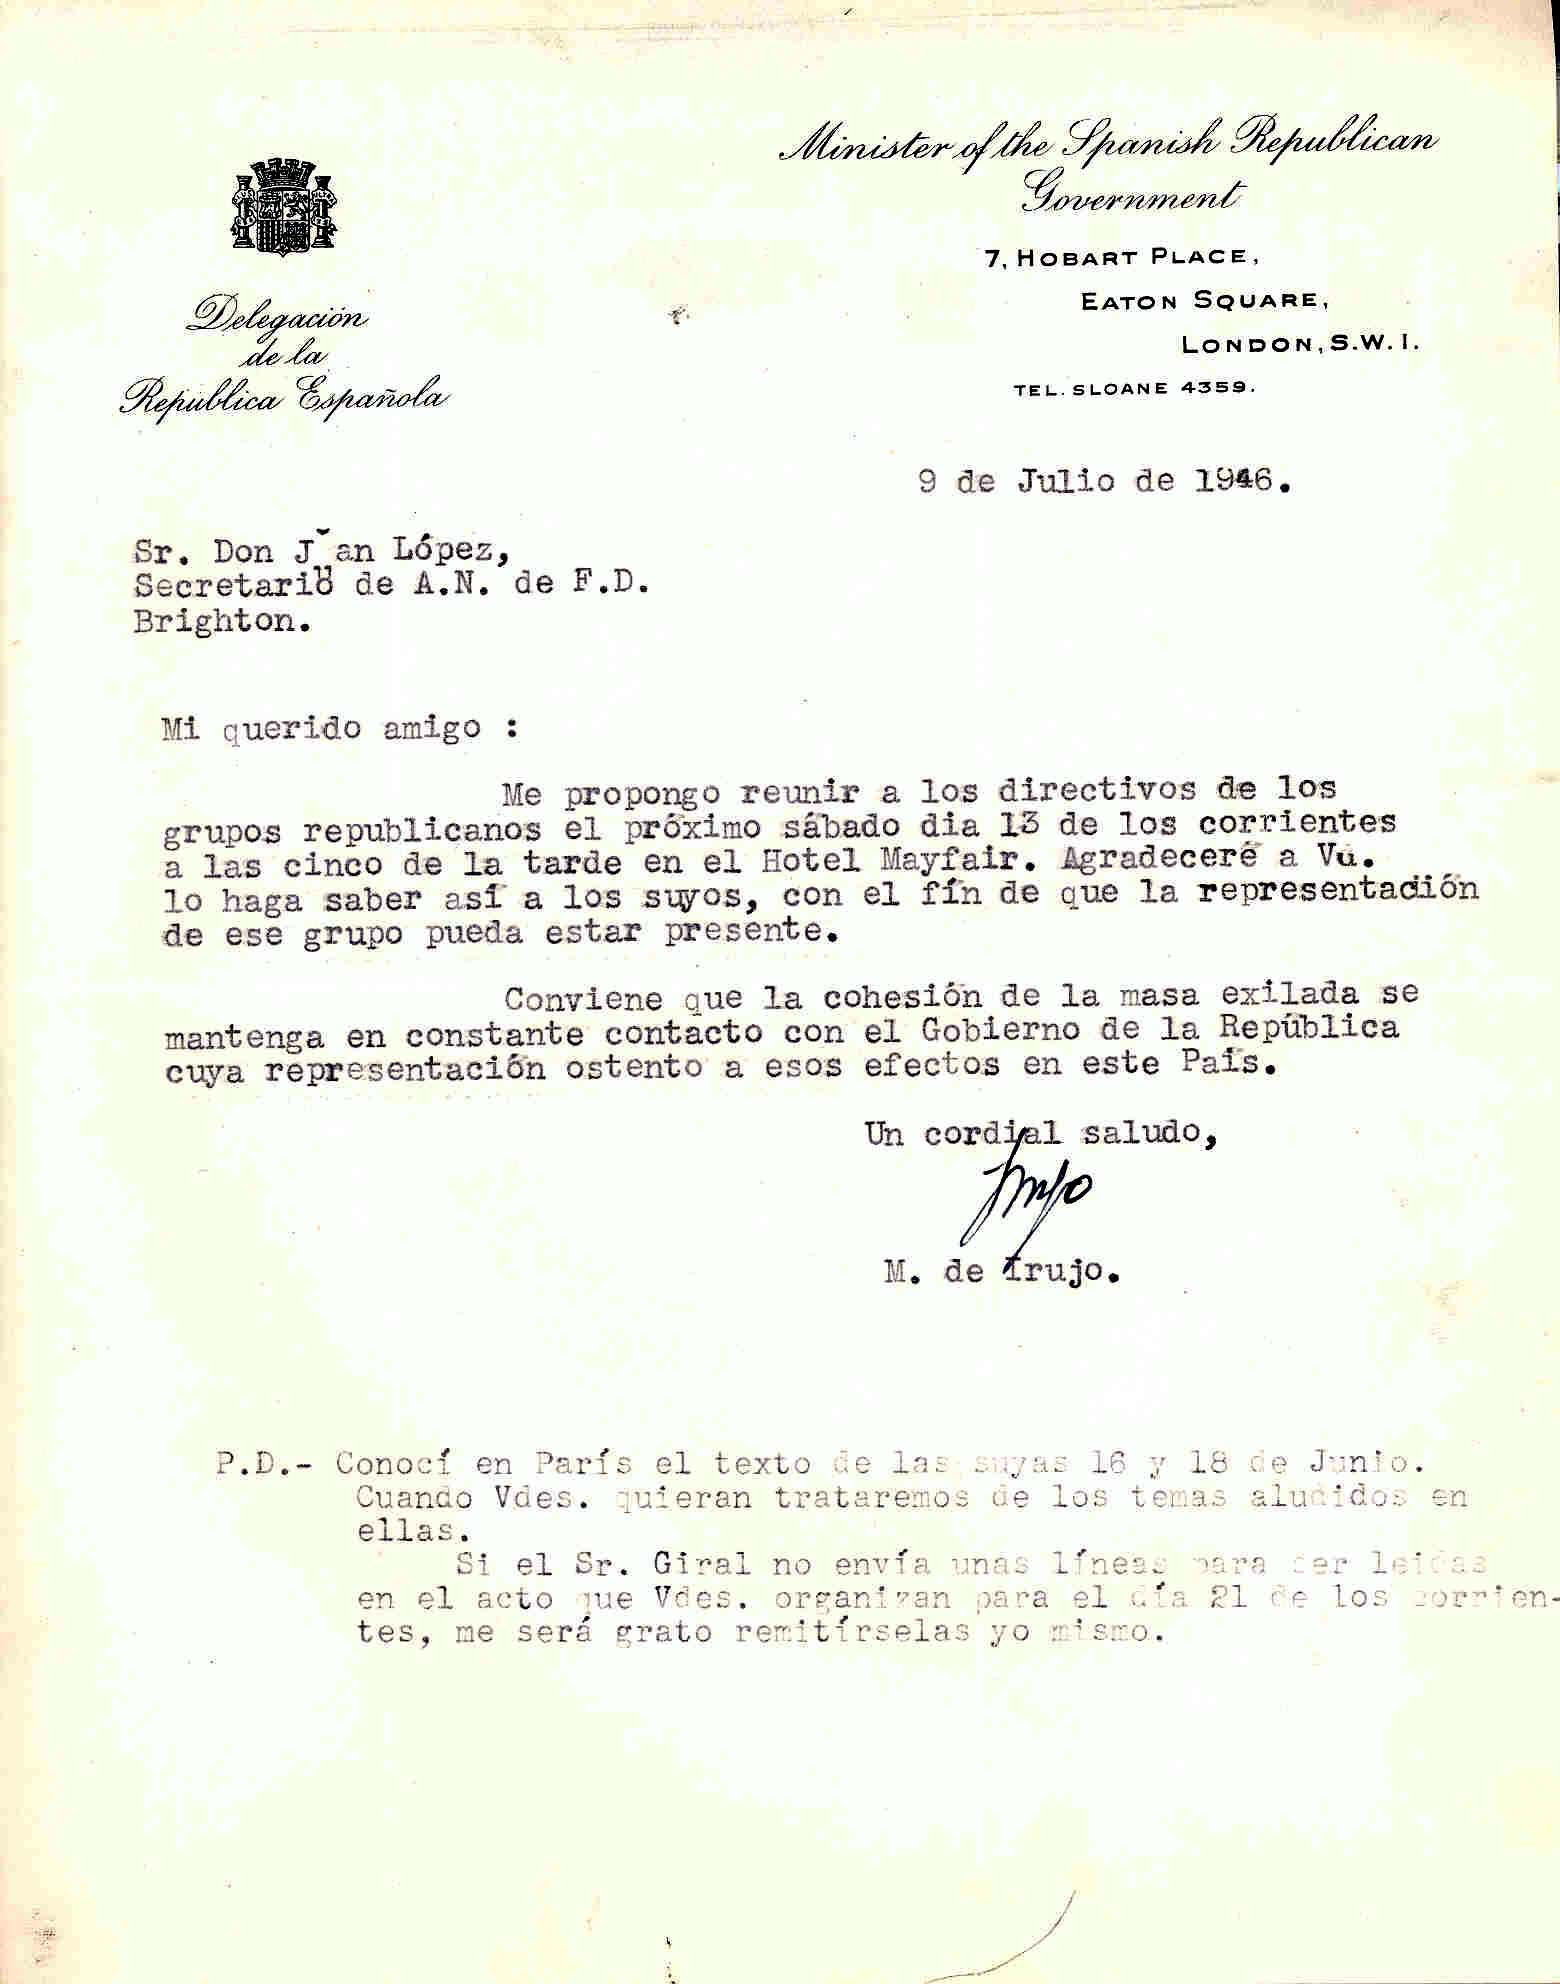 Carta de Manuel de Irujo, ministro de la República, en la que convoca a los dirigentes de la ANFD y de los grupos republicanos a una reunión el día 13 de julio